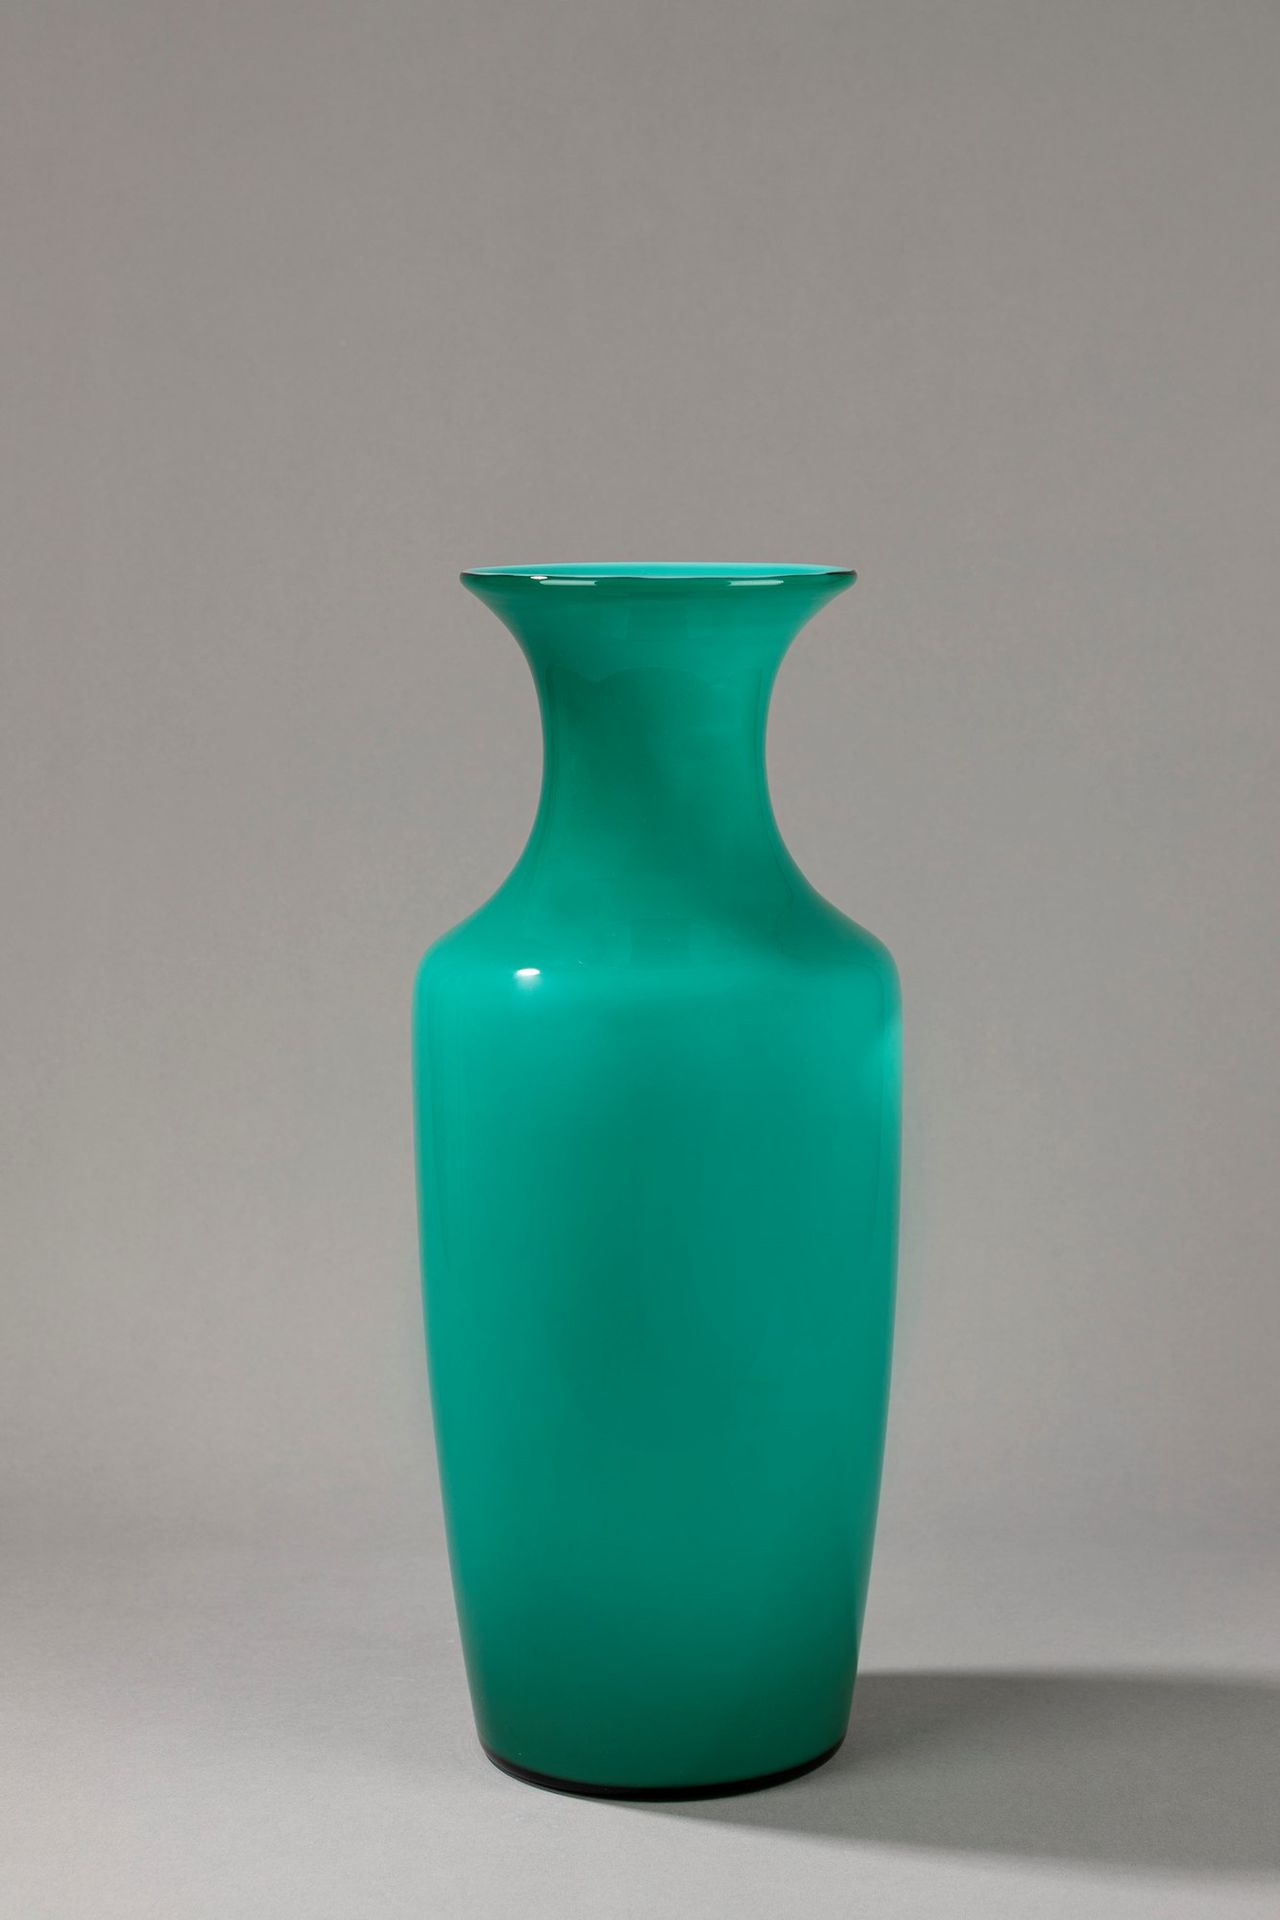 VENINI 花瓶，1950年约

h cm 43
incamiciato玻璃。

Acyd标志。

原始标签。